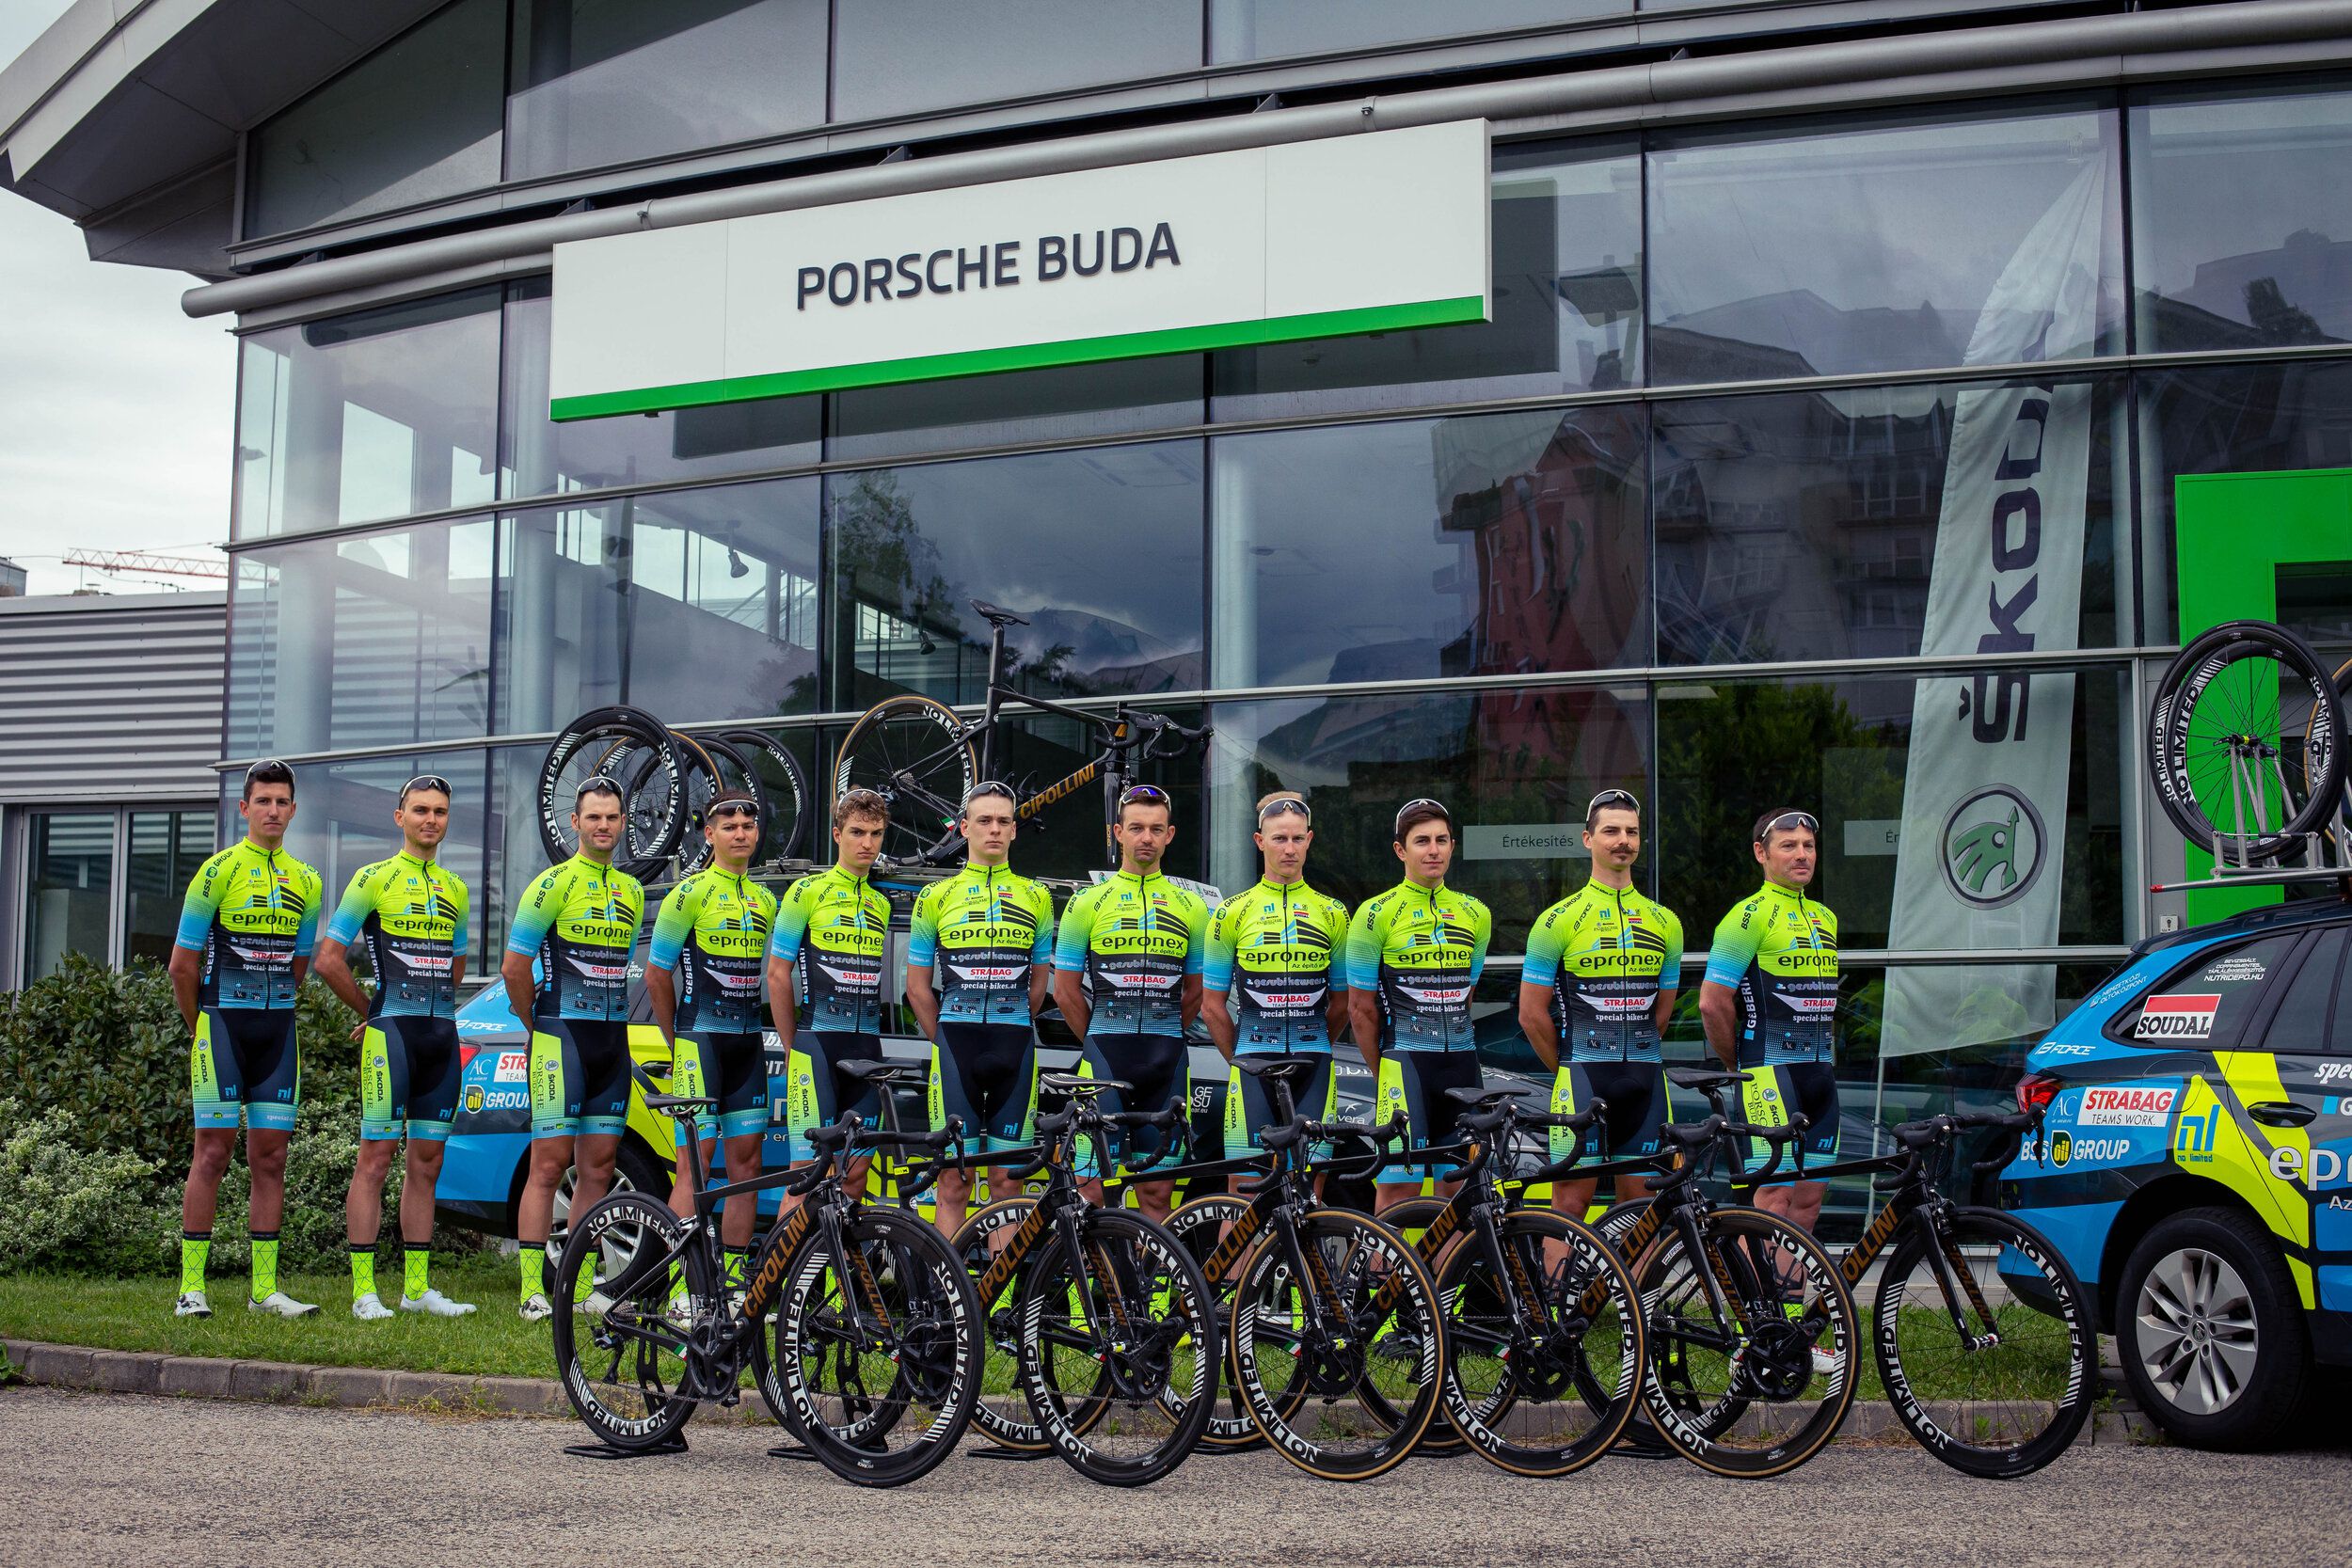 Öt év után lesz megint magyar profi kerékpáros csapat